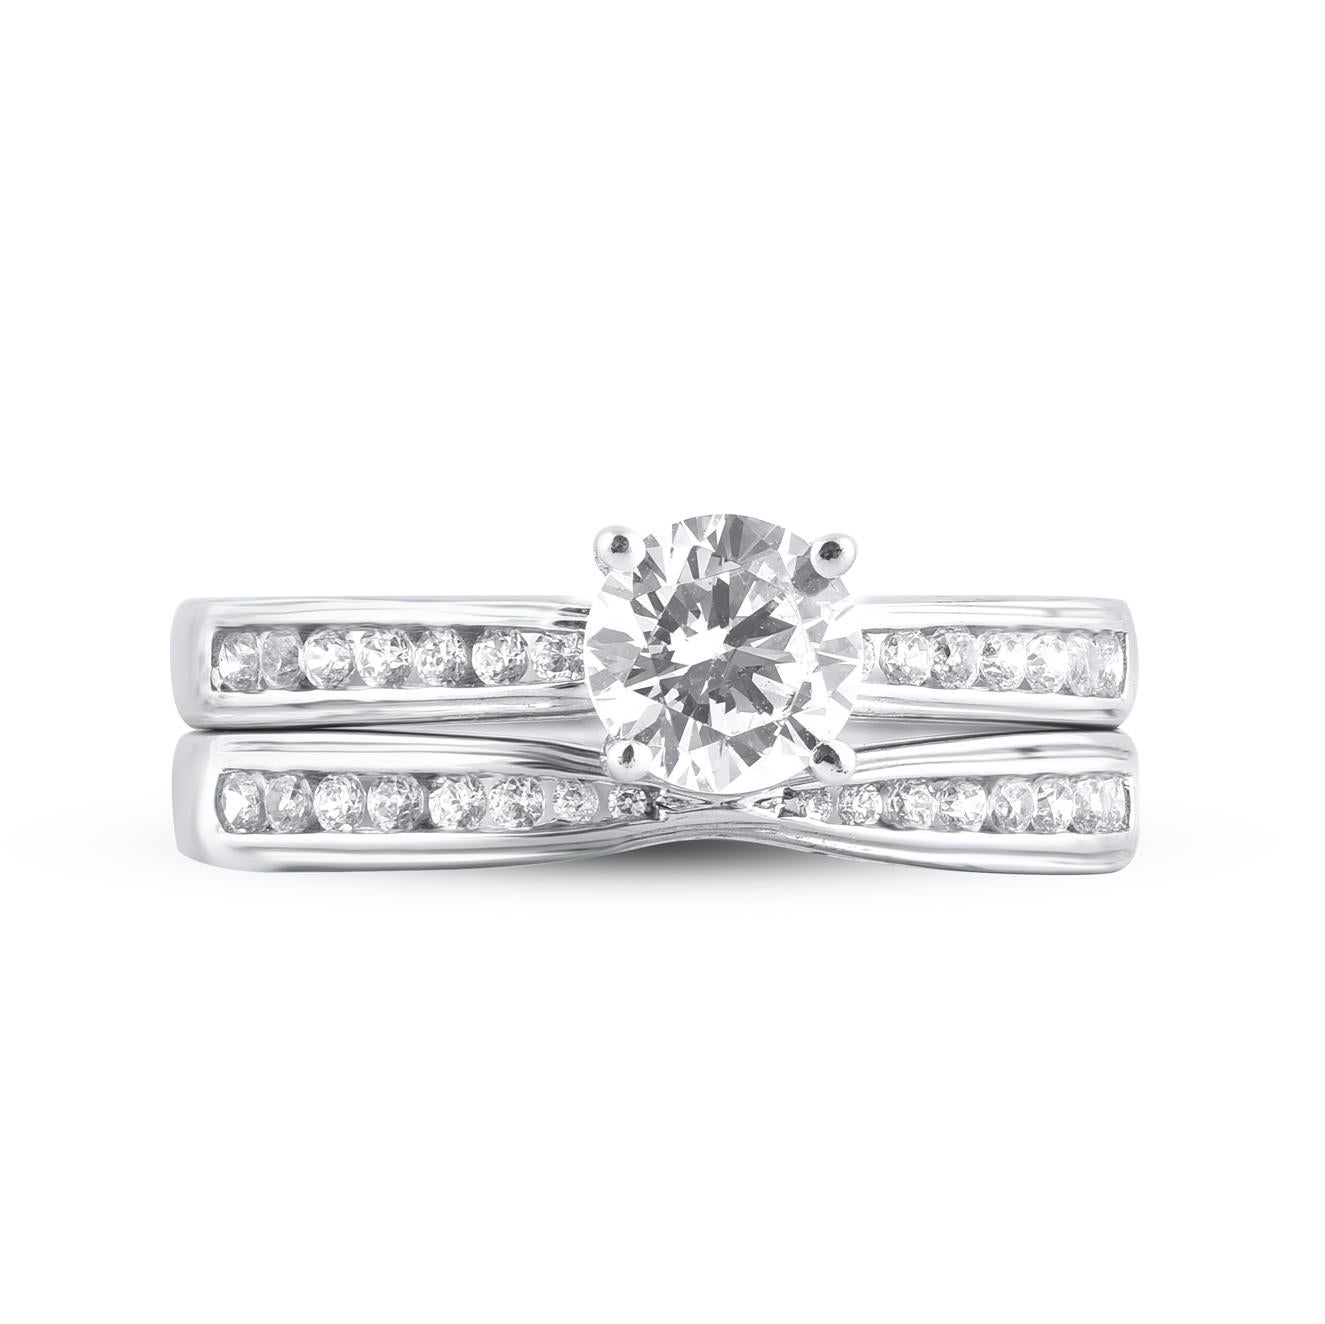 Bringen Sie Ihre Liebe mit diesem klassischen und traditionellen Diamant-Braut-Set zum Ausdruck. Gefertigt aus 14 Karat Weißgold. In diesem Ehering funkeln 31 runde Diamanten im Brillantschliff und im Einzelschliff, die in Zacken- und Kanalfassung